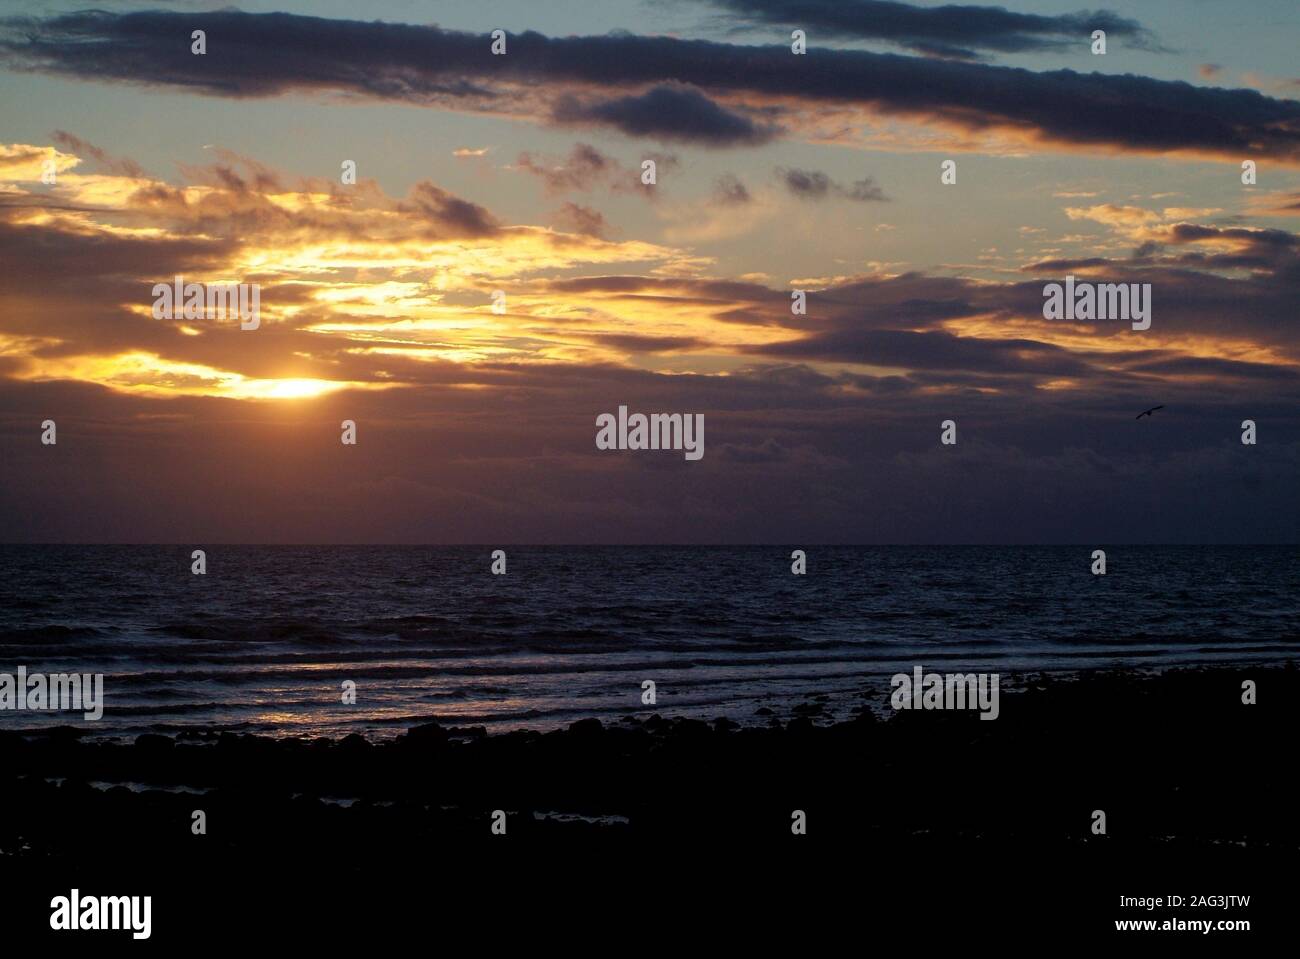 Sunset over sea 3 Stock Photo